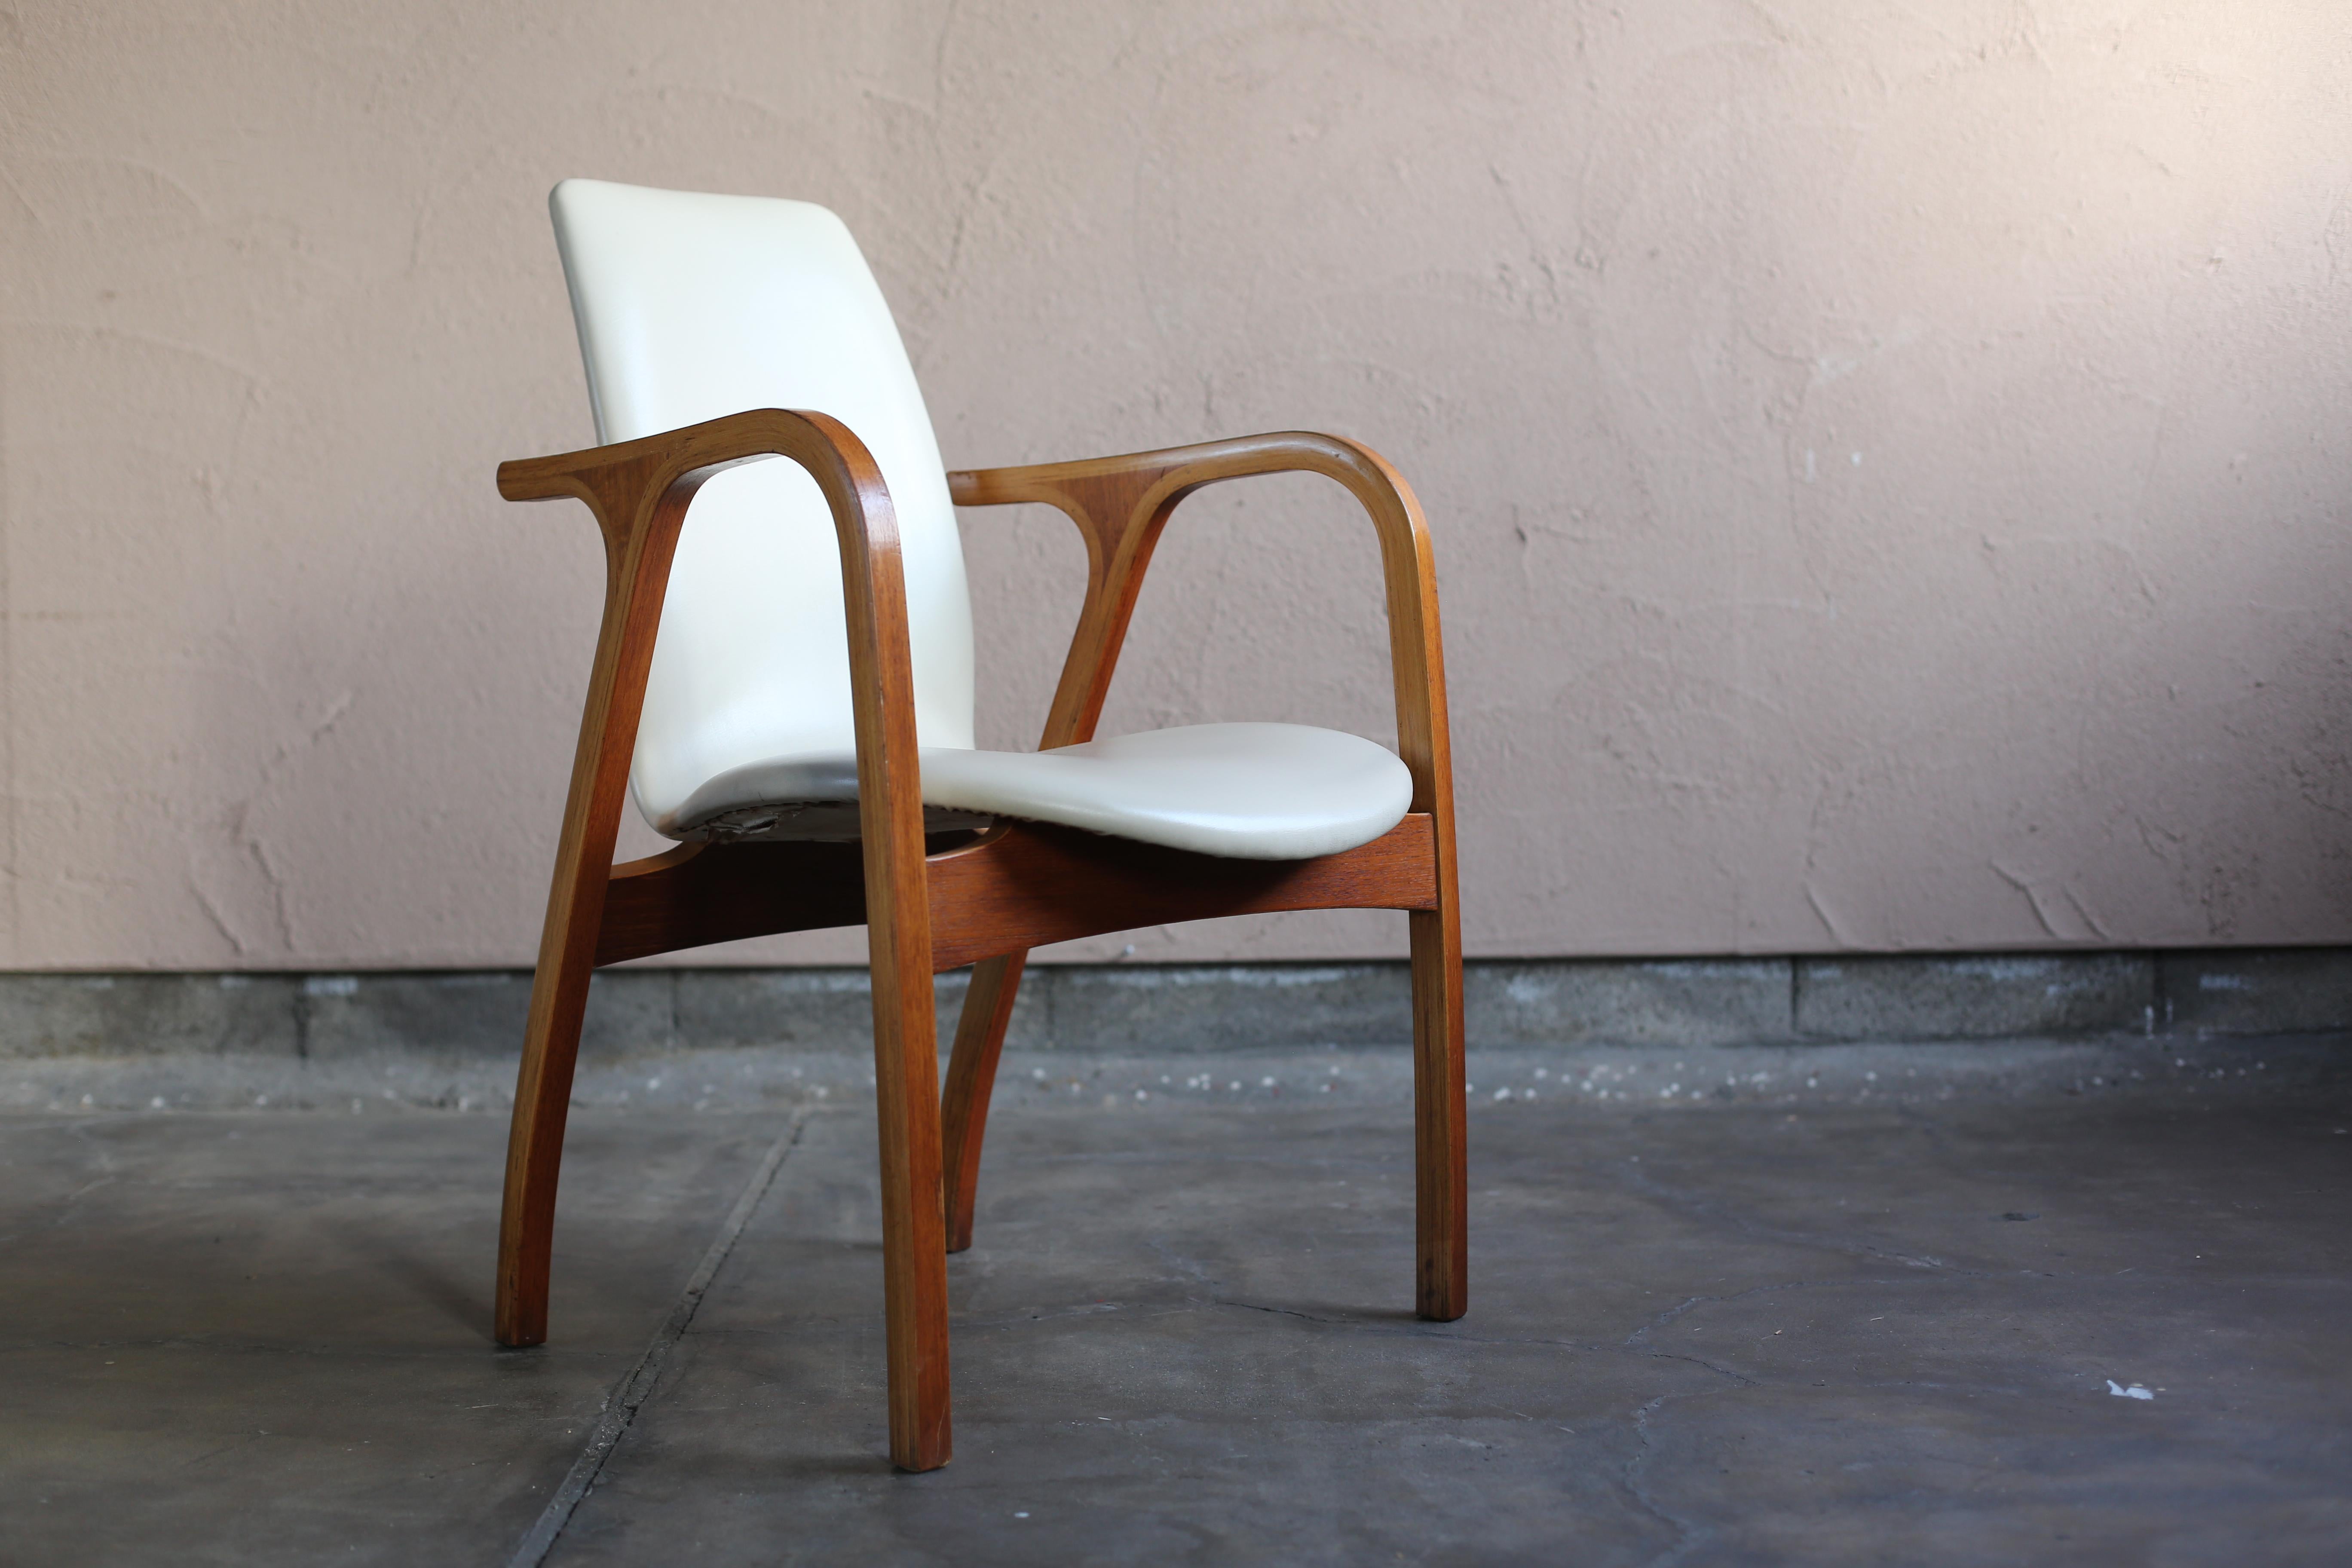 La chaise Antler a été conçue par l'Institut de recherche architecturale Junzo Sakakura en 1966.
Il s'agit d'une chaise de maître qui s'est vendue longtemps et qui est encore fabriquée aujourd'hui.
Il s'agit d'un monopode rare qui utilise un placage